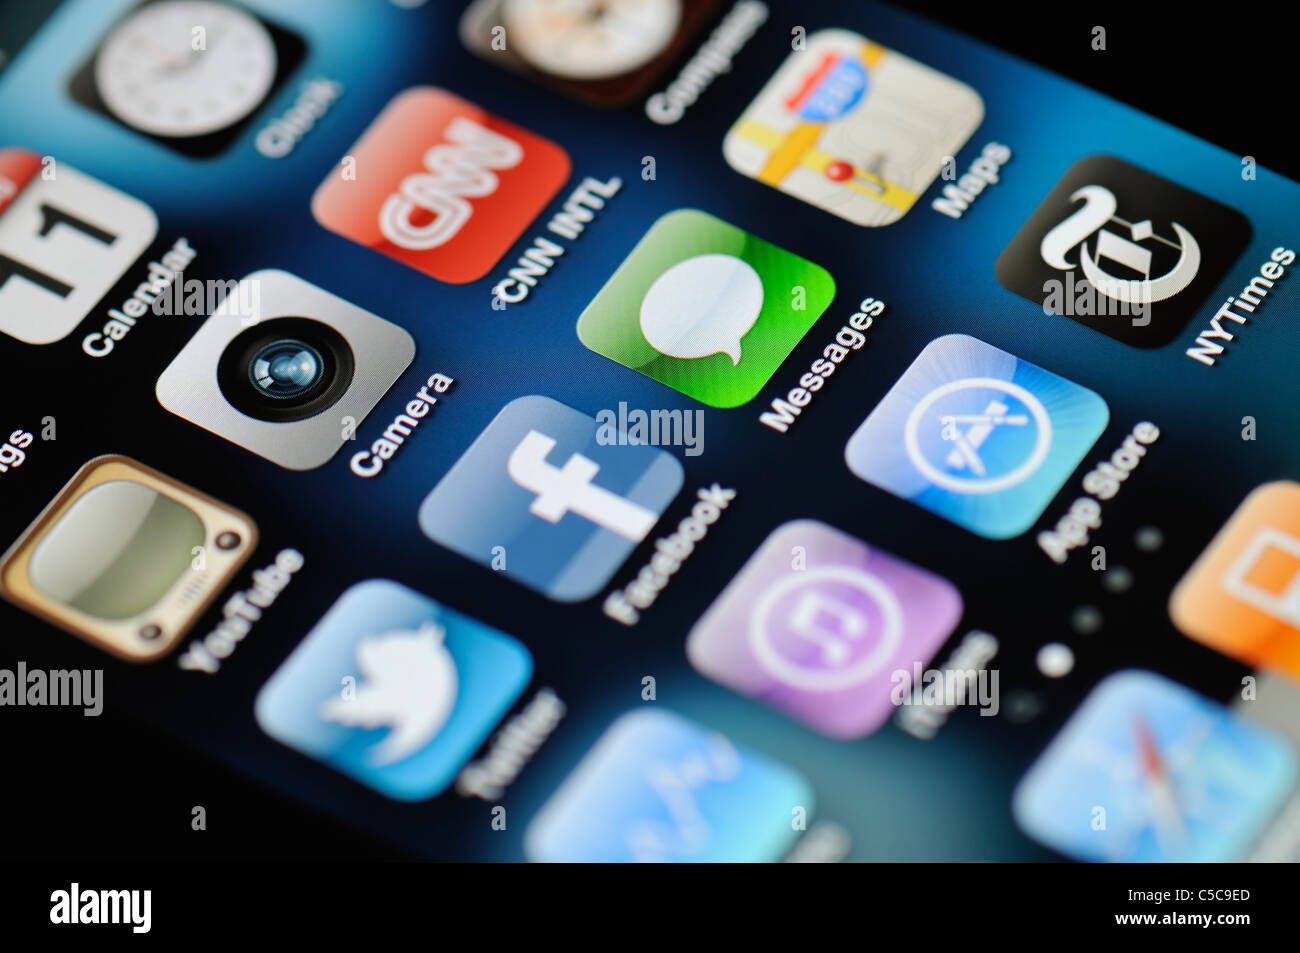 Un gros plan d'un Apple iPhone 4 écran montrant l'App Store et diverses applications Banque D'Images